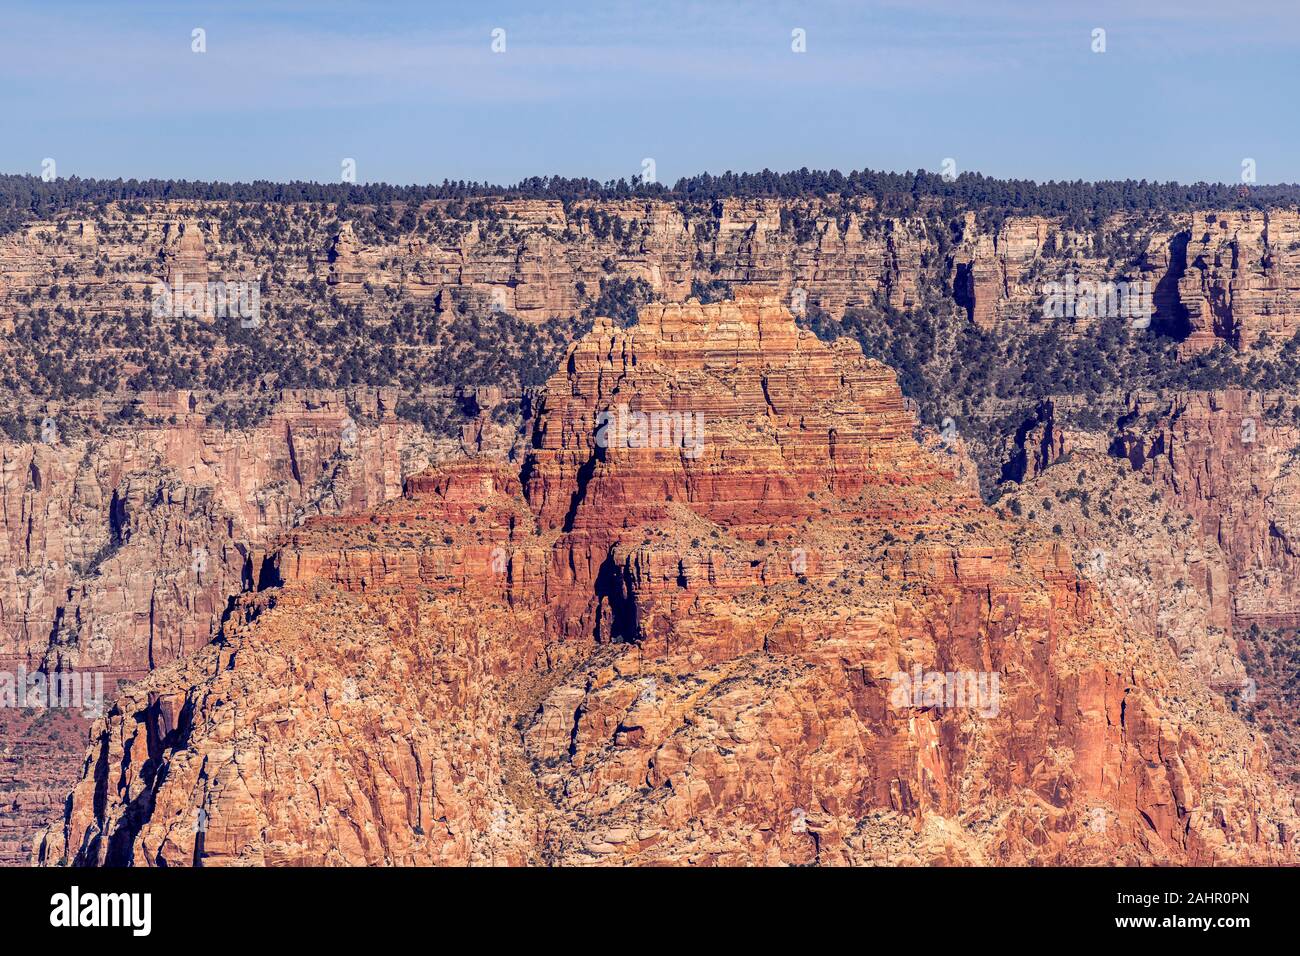 Une vue panoramique sur un plateau à Moran Point montrant un lone pine tree sur le rebord du Grand Canyon rouge encadrée de rock. Banque D'Images